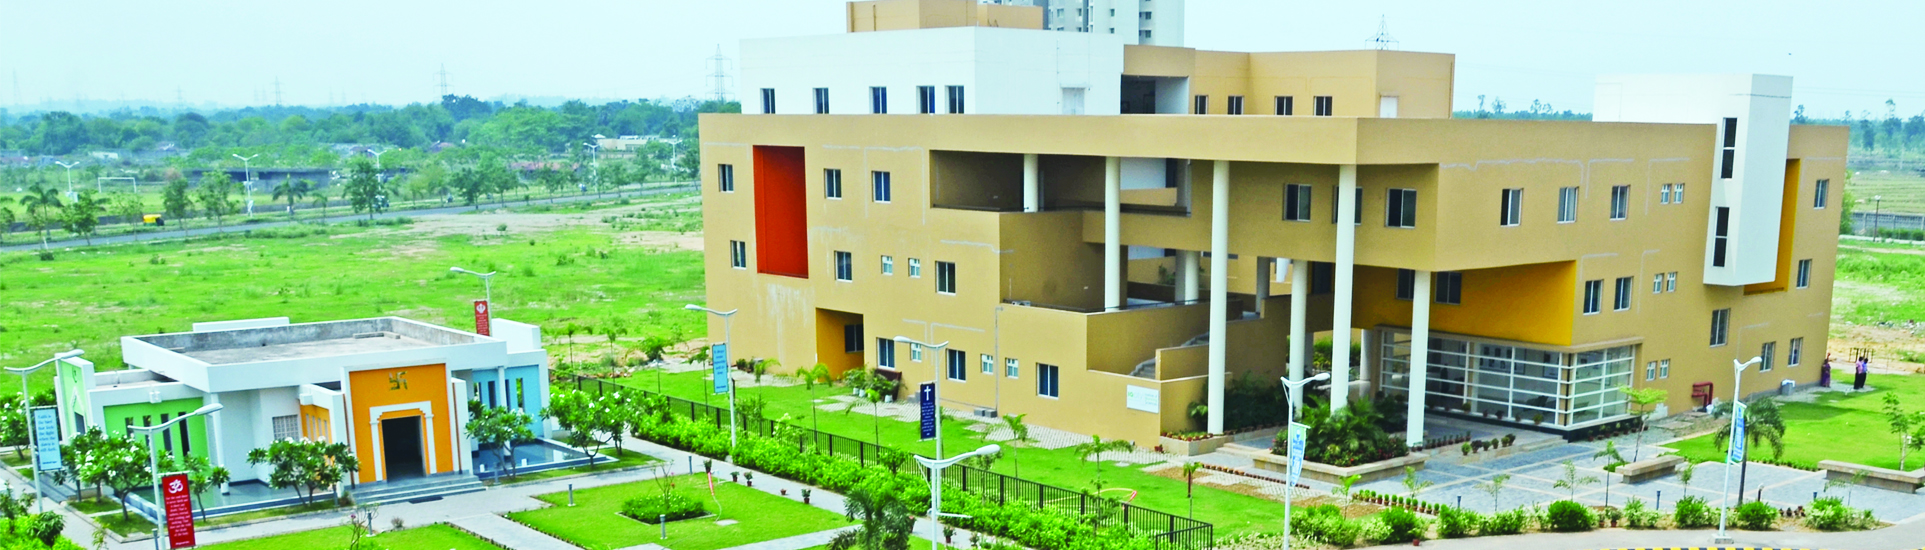 I Q City Institute Of Nursing Sciences, Durgapur Image